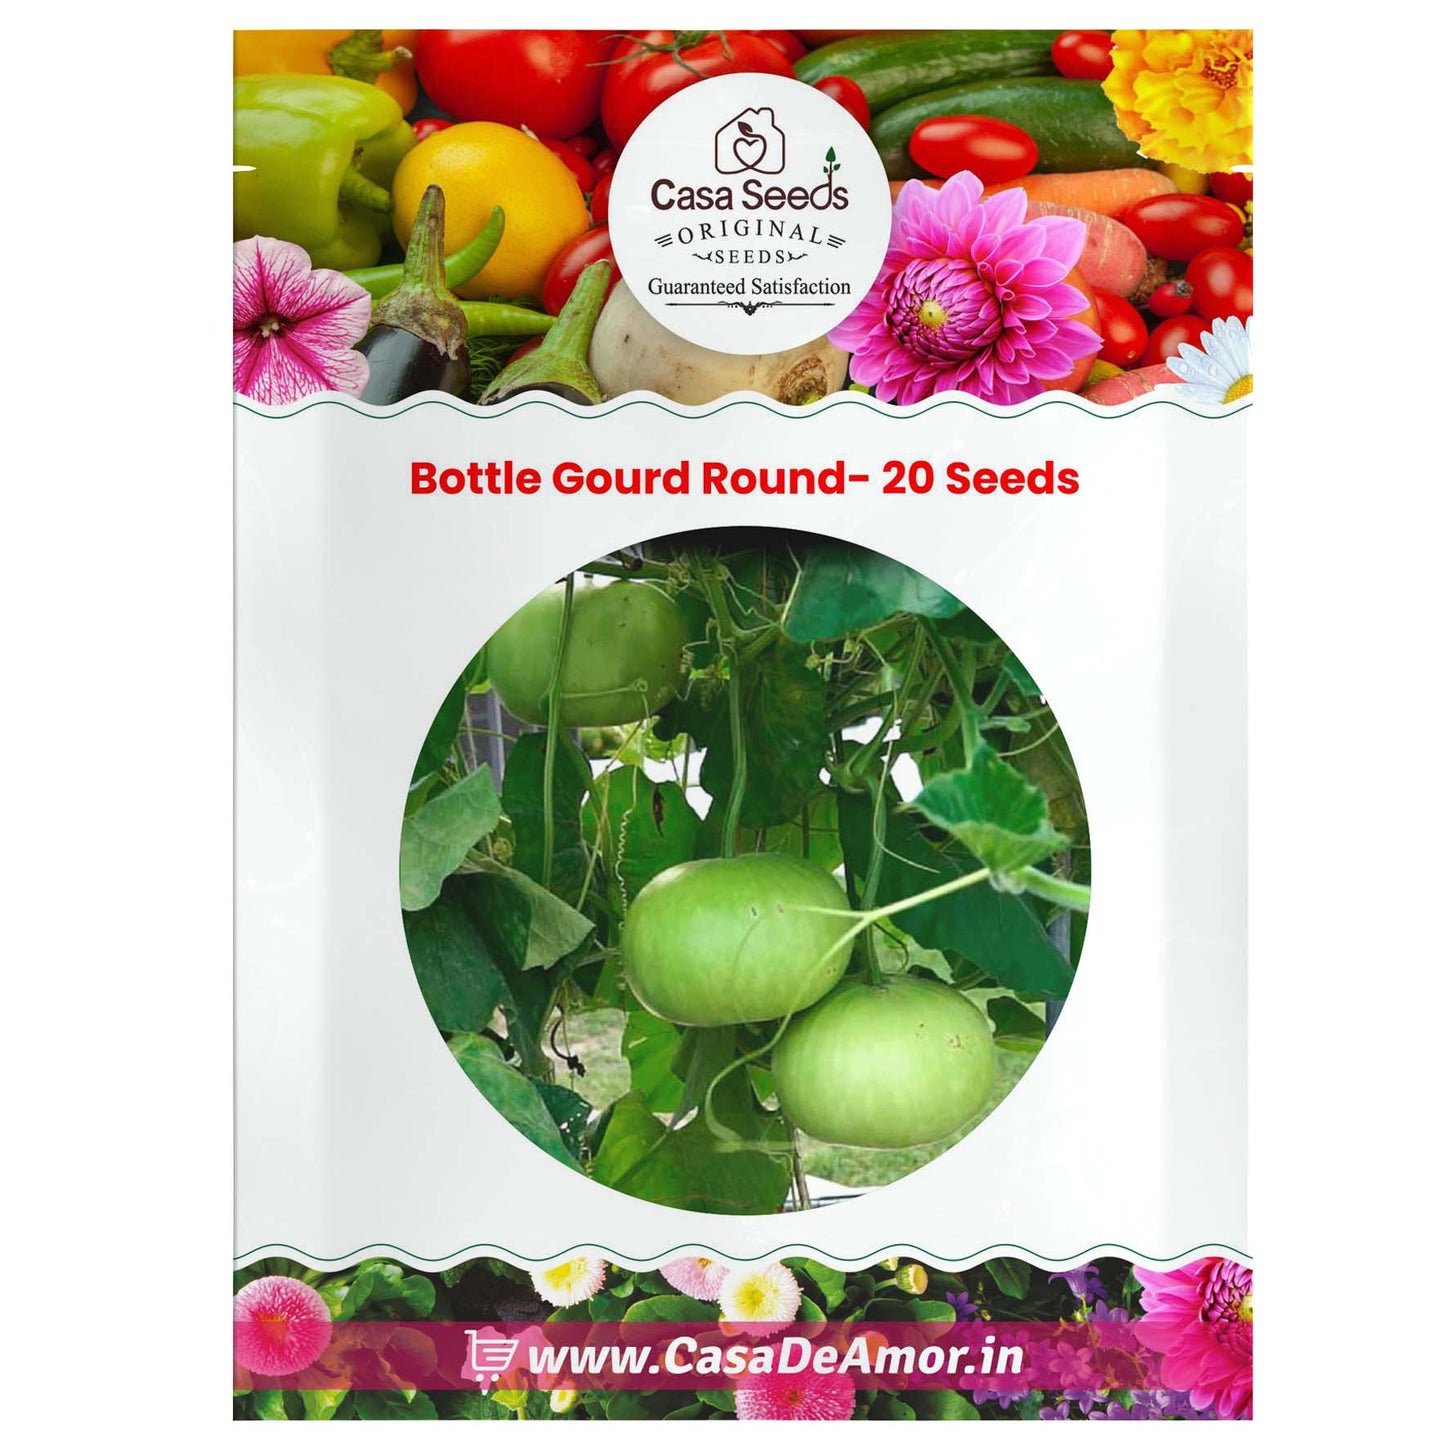 Bottle Gourd Round- 20 Seeds